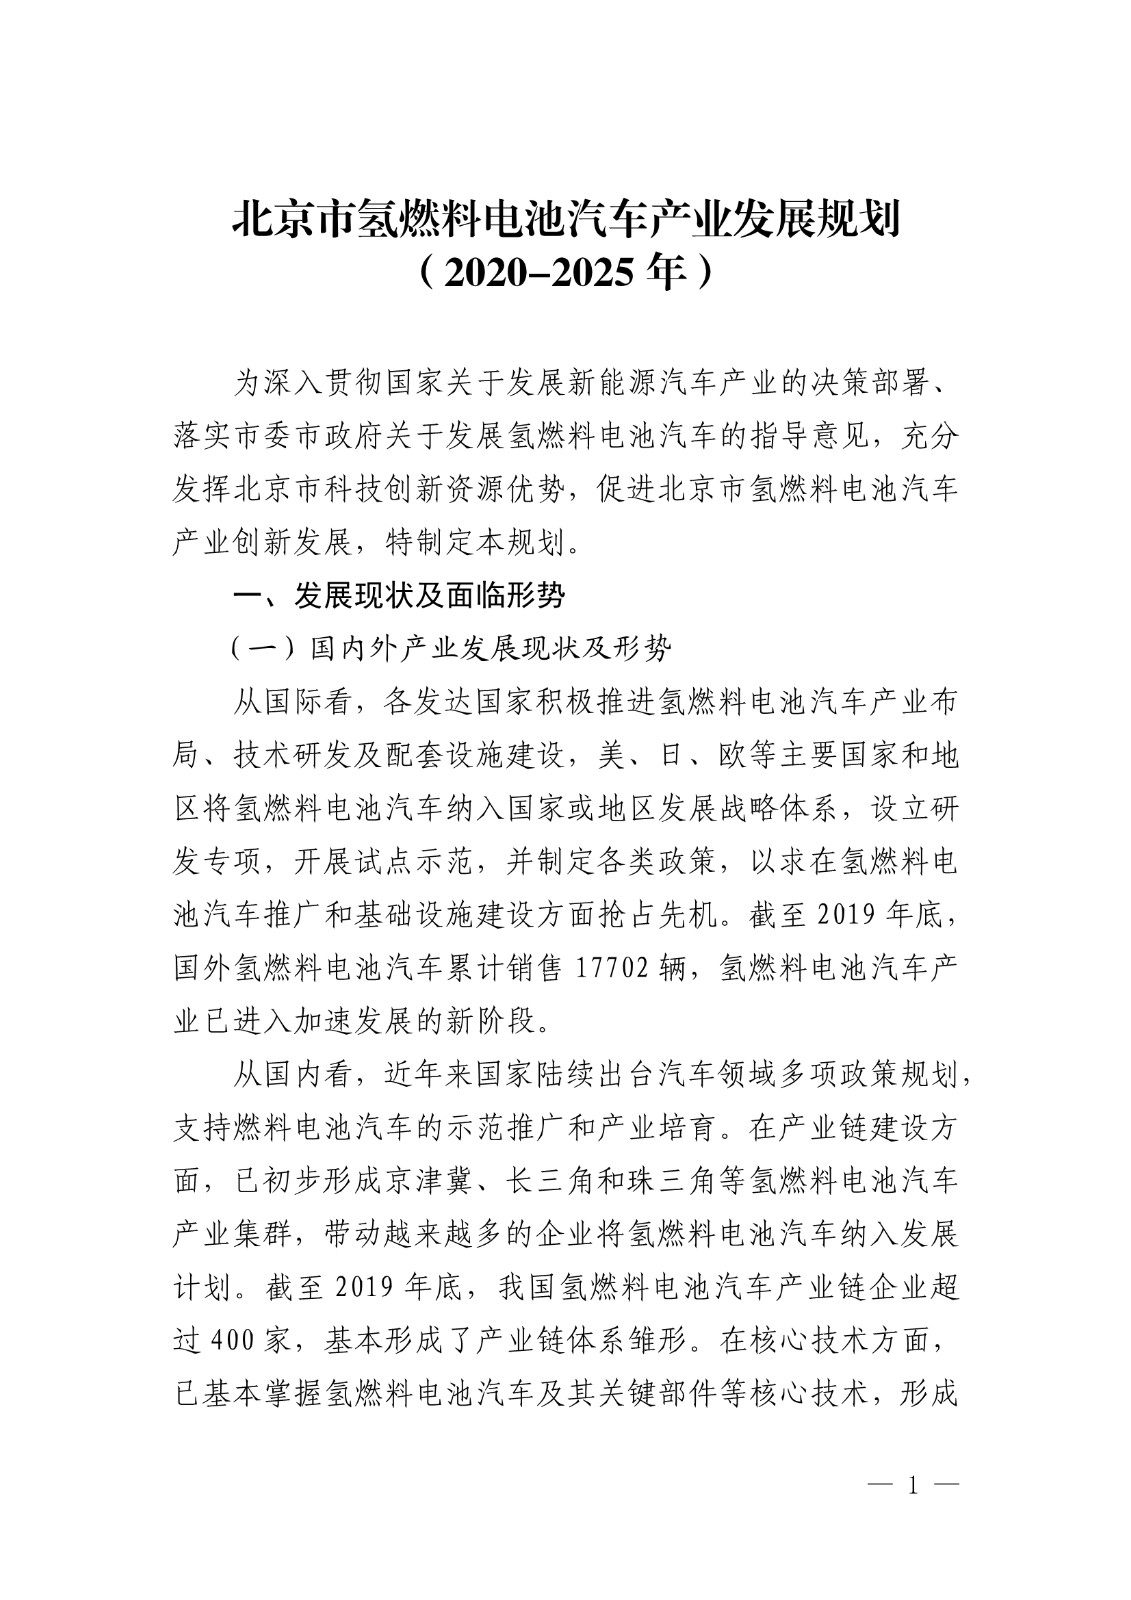 10月30日，北京市经济和信息化局发布《北京市氢燃料电池汽车产业发展规划（2020-2025年）》。